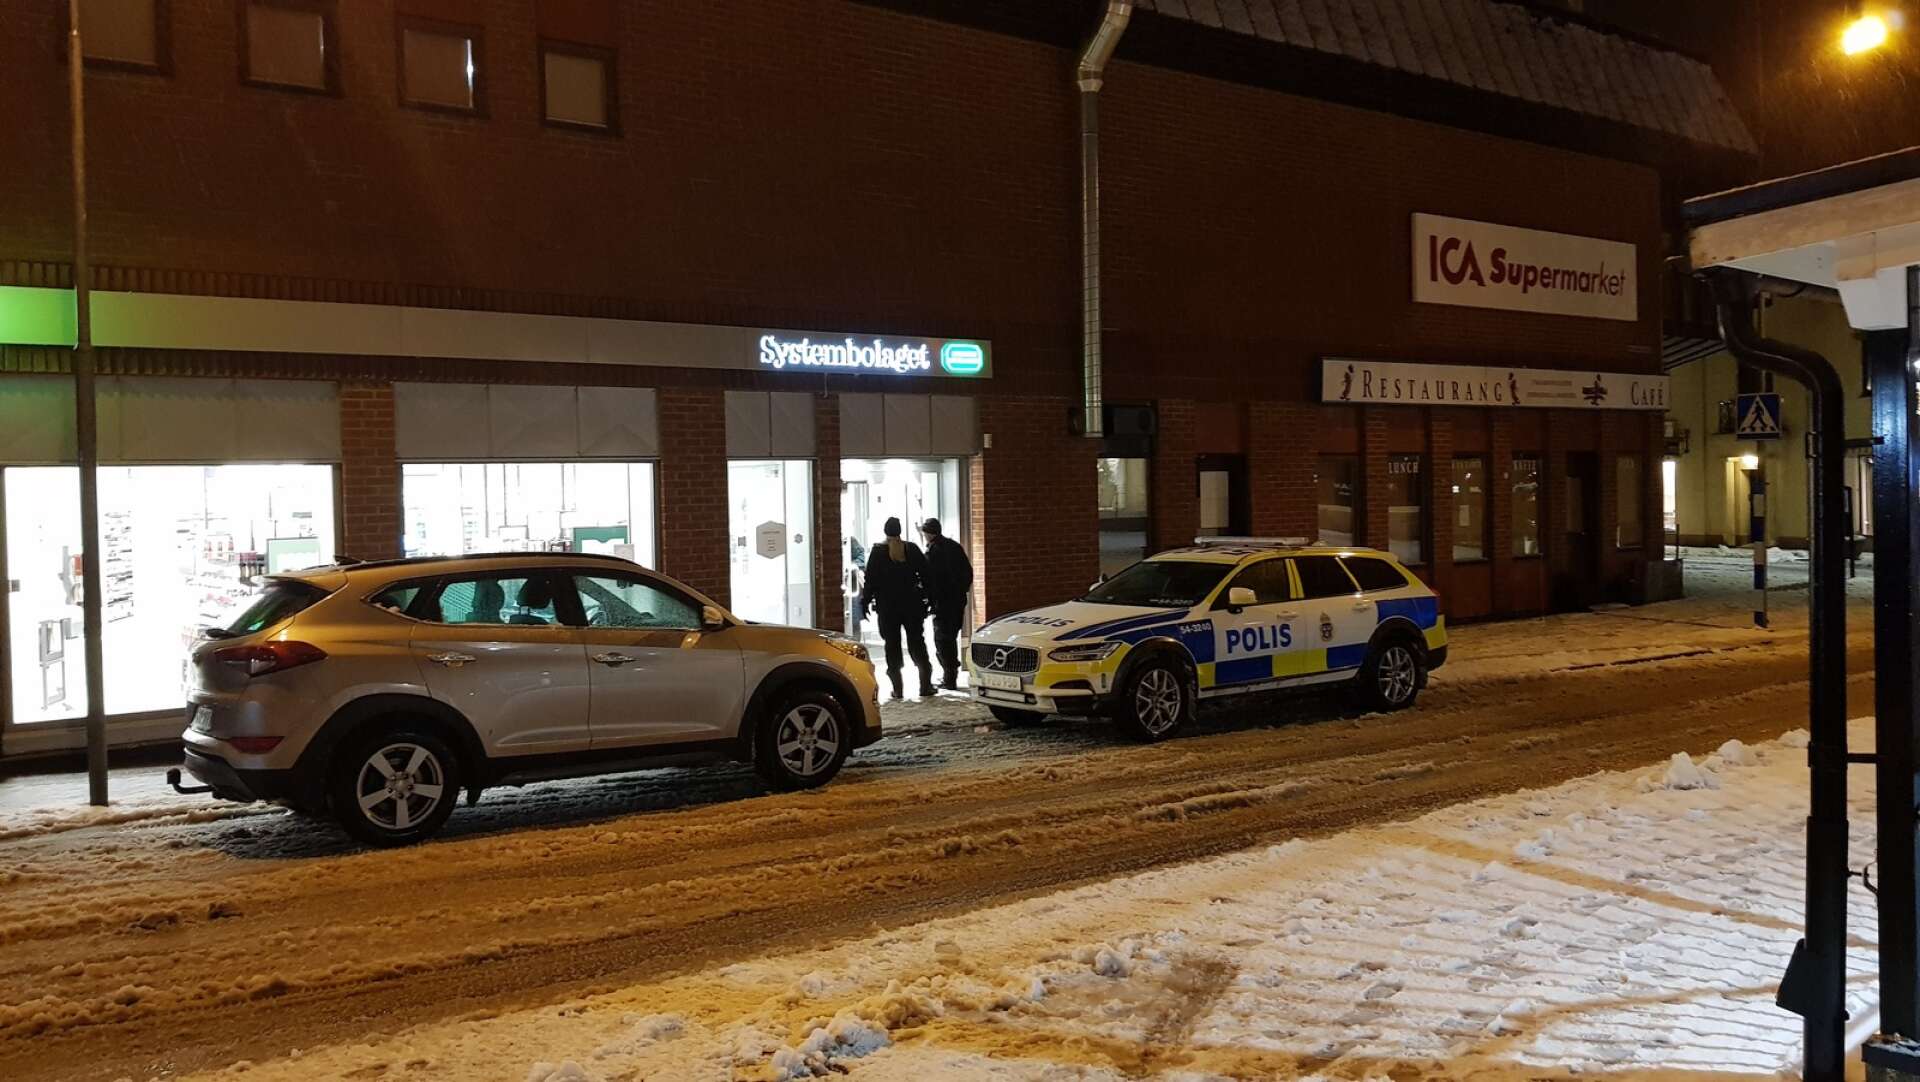 En beväpnad man rånade Systembolaget i Bengtsfors på måndagskvällen den 11 januari. Polisen sökte efter gärningsmannen med flera patruller och kunde gripa en misstänkt senare under kvällen.